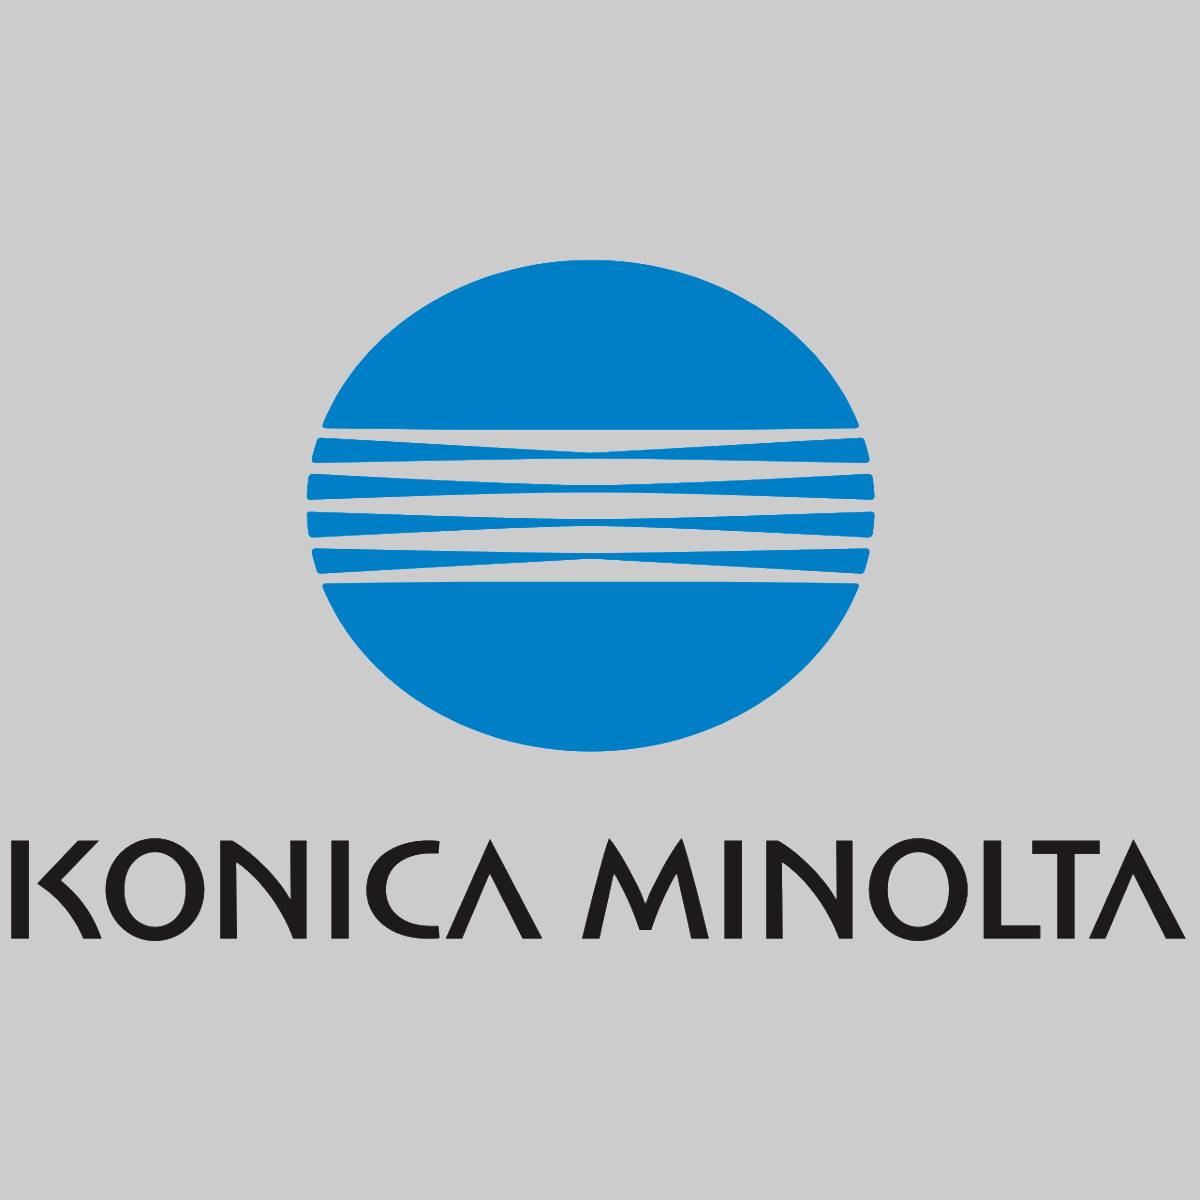 "Toner d'origine Konica Minolta TN214K noir A0D7154 pour Bizhub C200 nouveau OVP